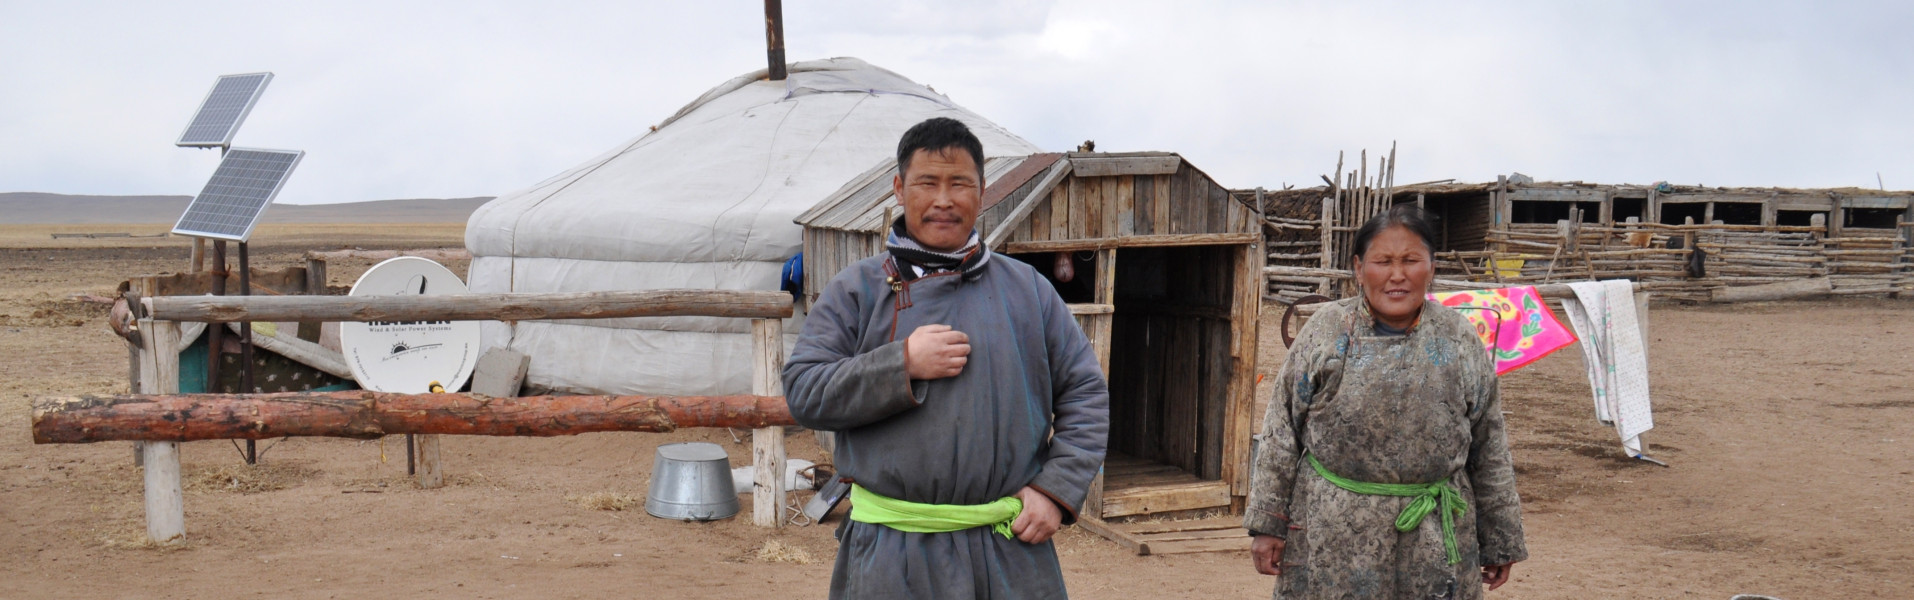 Zvířata jsou zesláblá a umírají. Člověk v tísni v Mongolsku zmírňuje tragédii dzudu